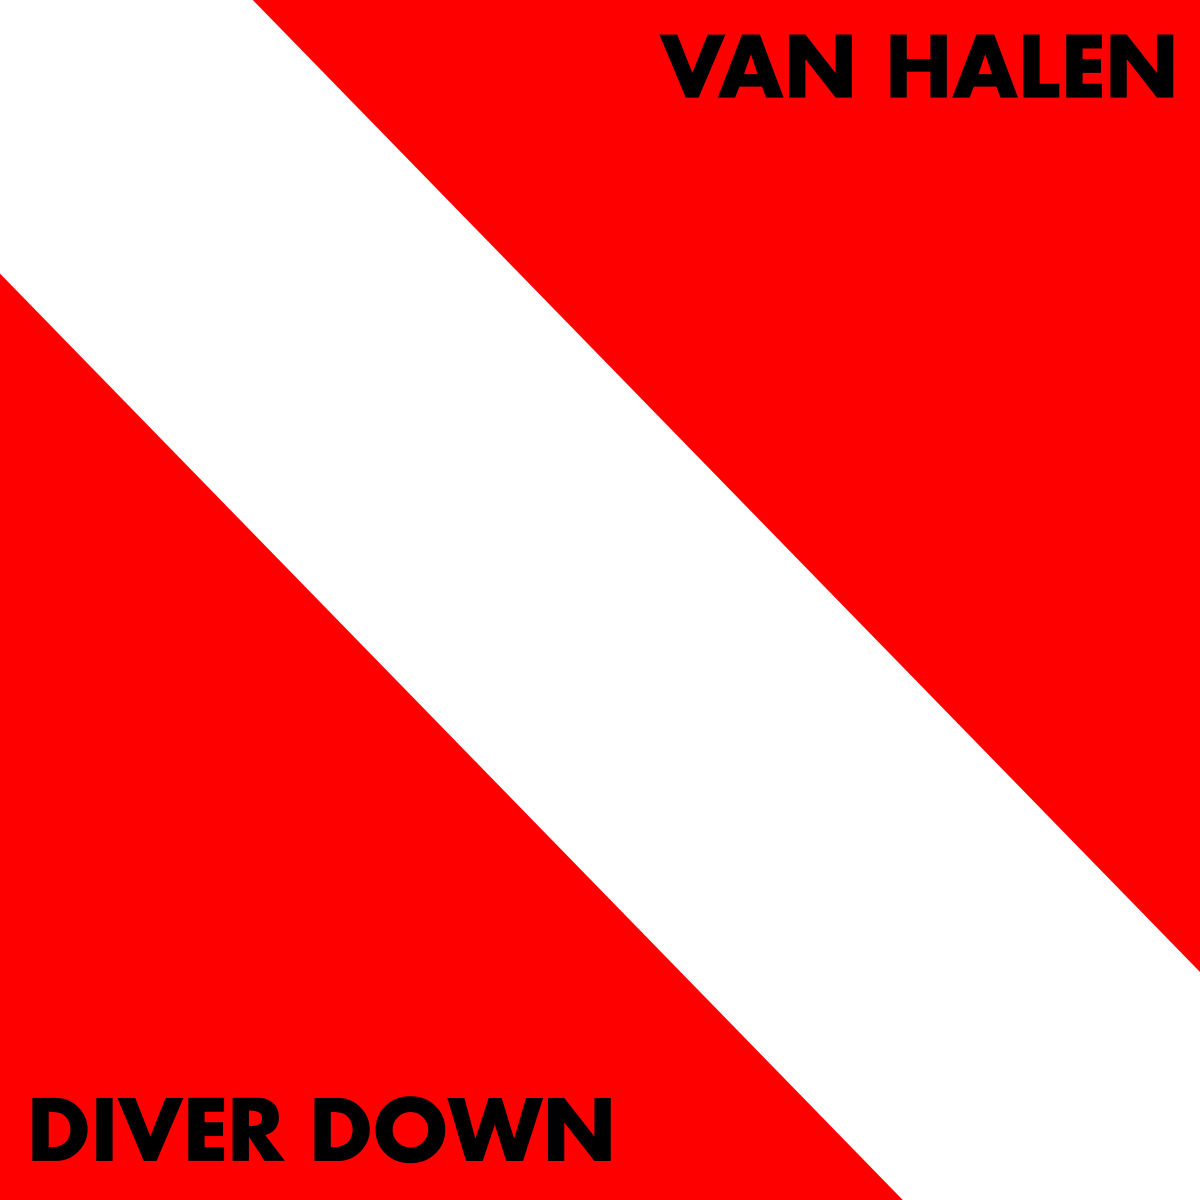 Discos,bandas y artistas sobrevalorados. - Página 5 1200px-Van_Halen_-_Diver_Down.svg